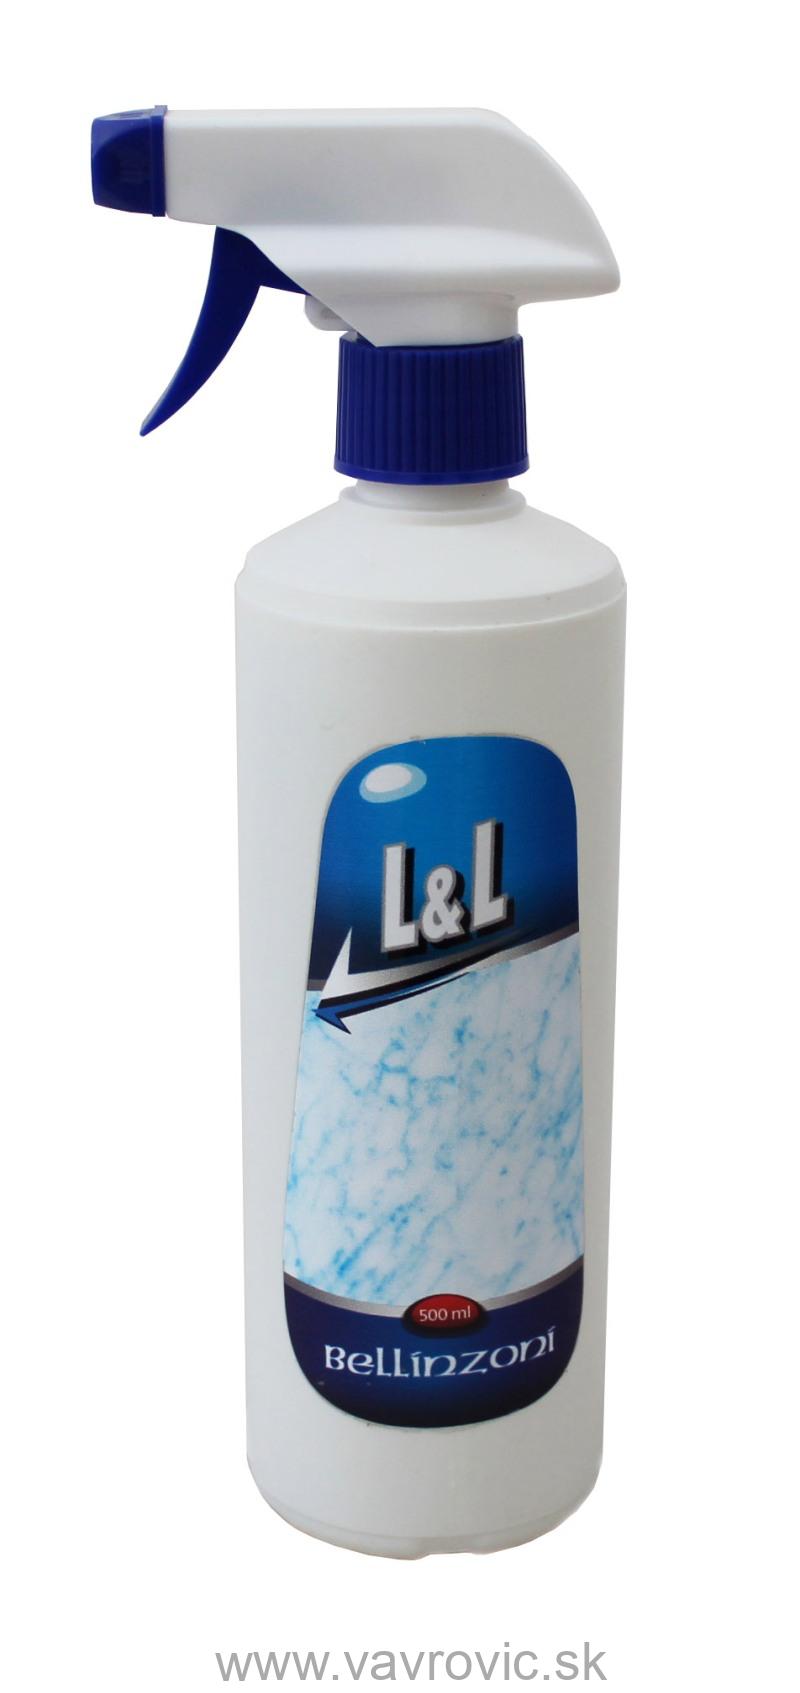 Bellinzoni - L&L / 500 ml